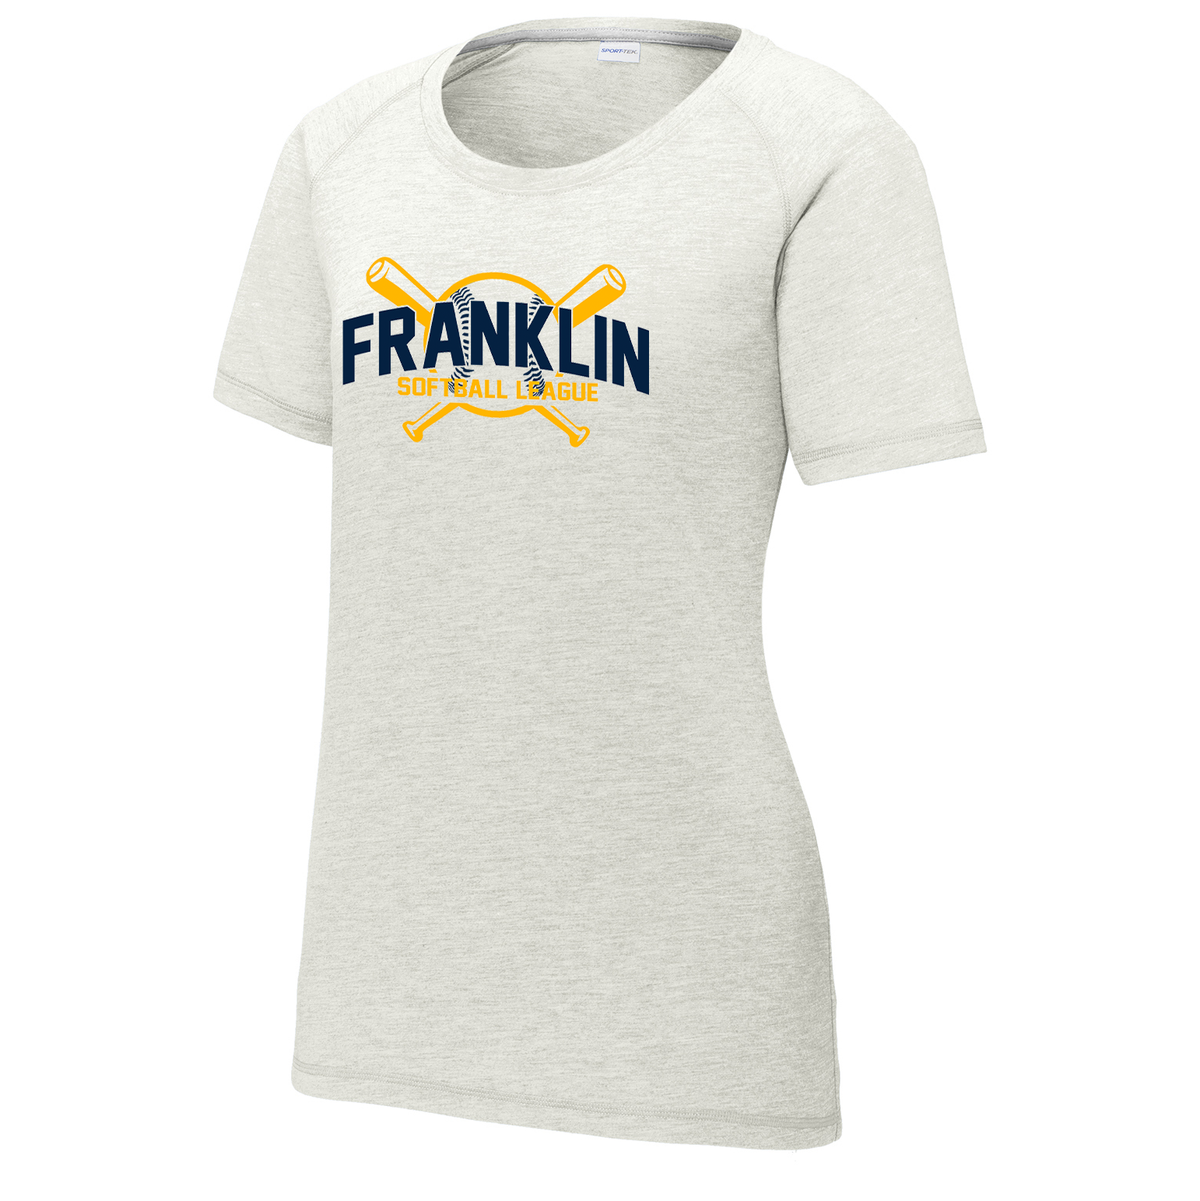 Franklin Township Softball League Women's Raglan CottonTouch